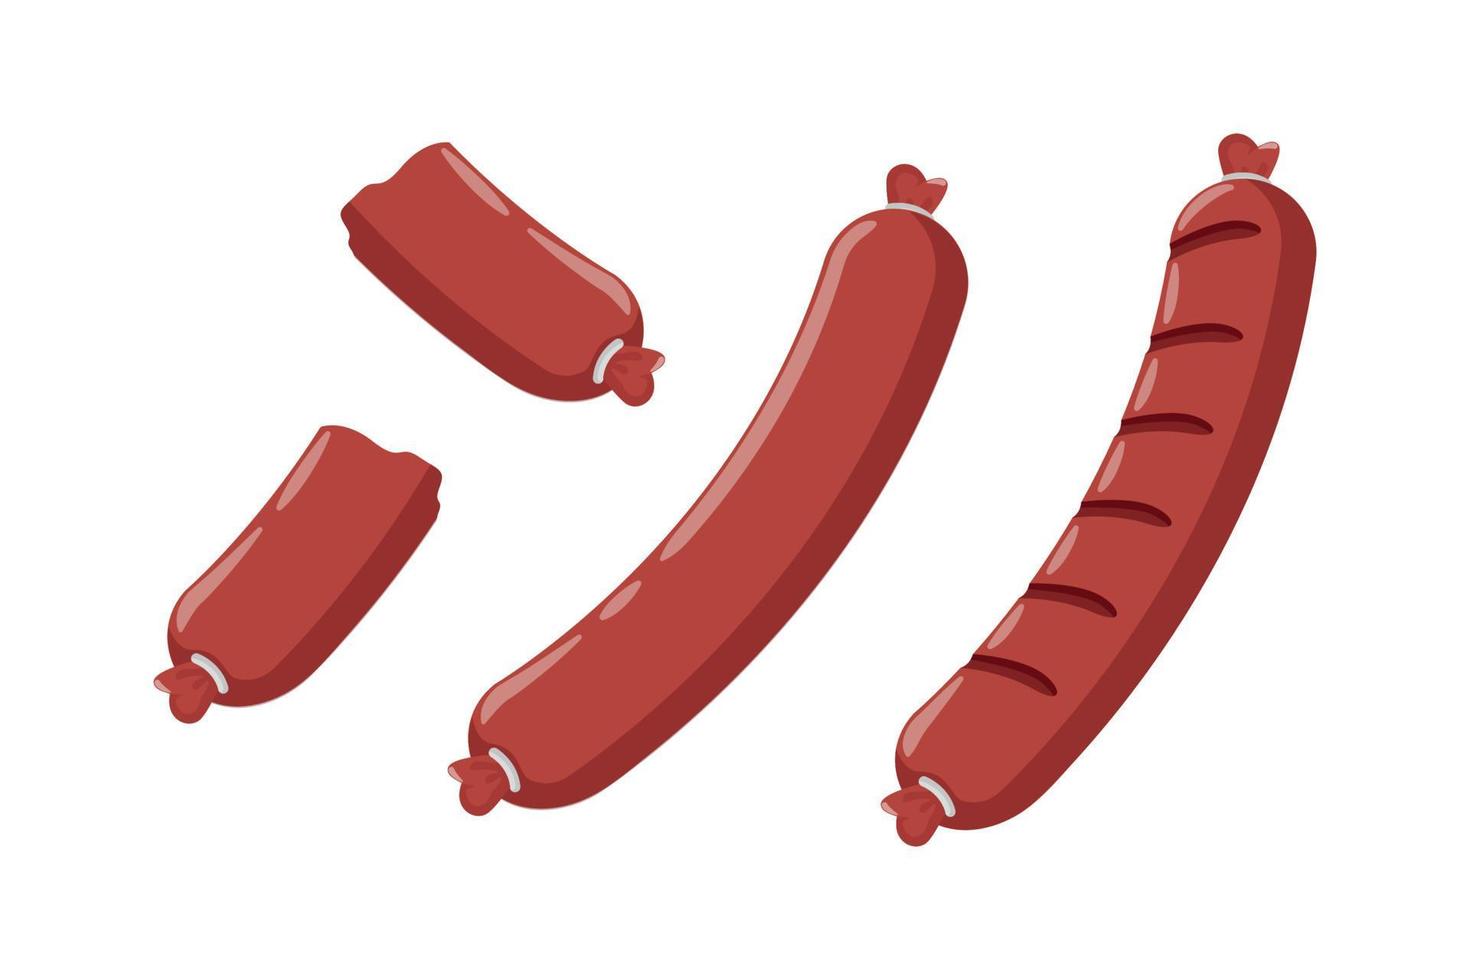 original grilled sausage illustration design vector